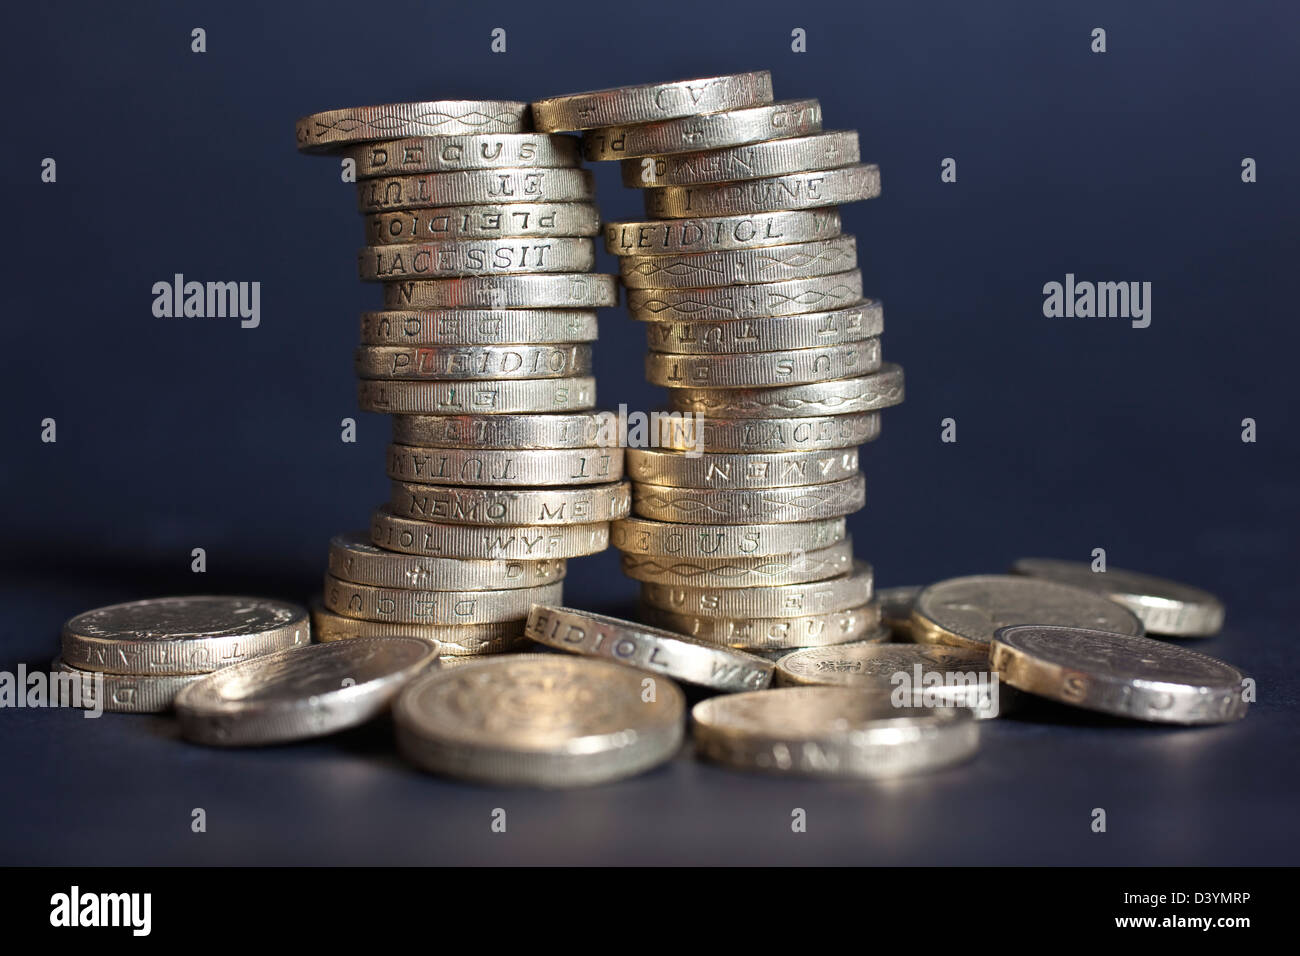 Royaume-uni €1 pièces de monnaie et photographié après Moody's a abaissé la notation "AAA". Banque D'Images